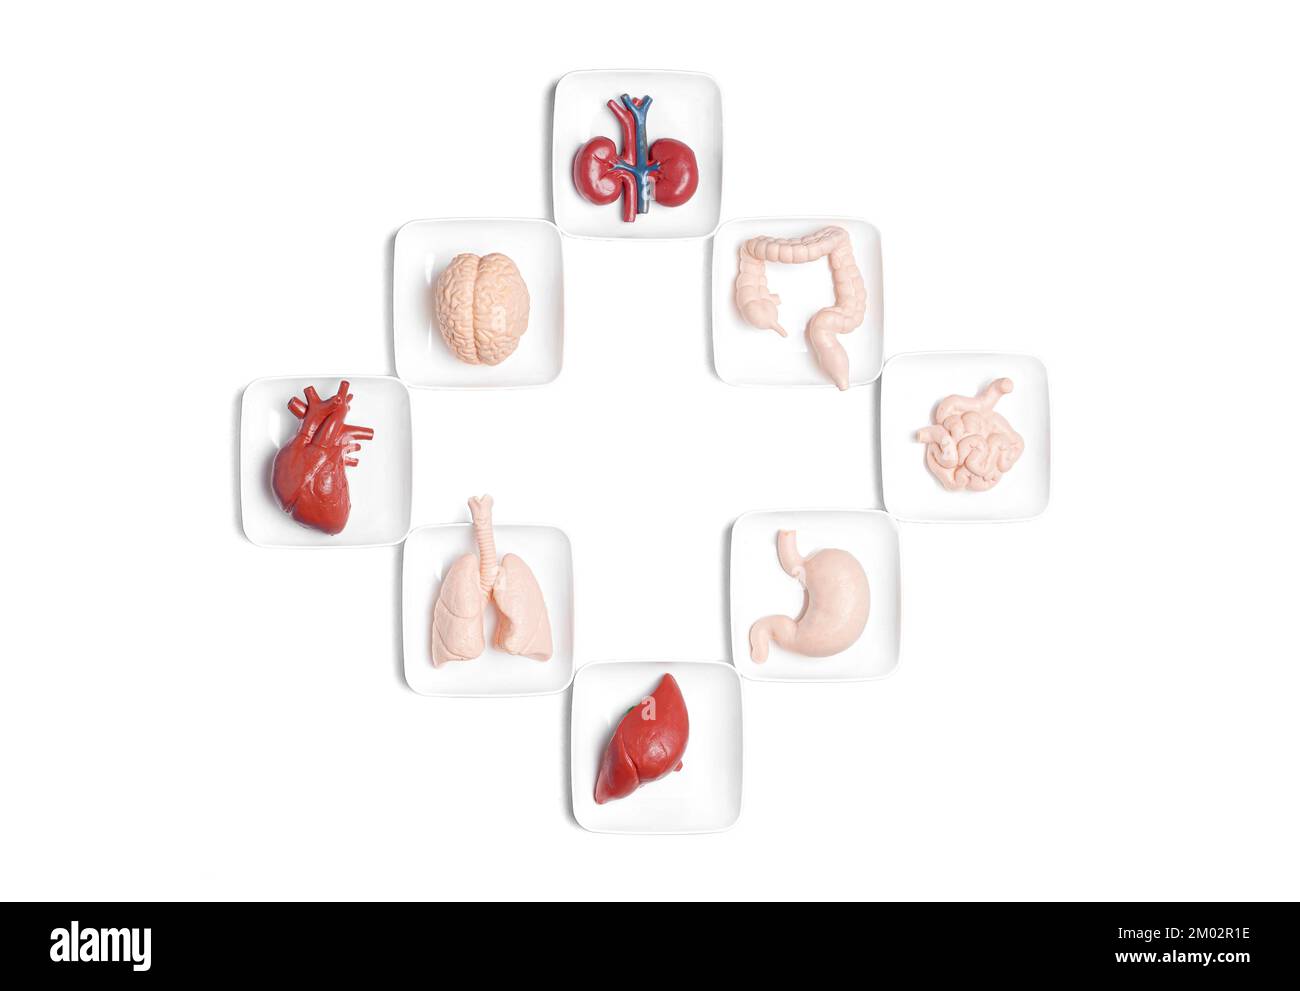 Concetto correlato alla donazione di organi creativi: Organi del corpo umano giocattolo disposti a croce isolati su sfondo bianco. Foto Stock